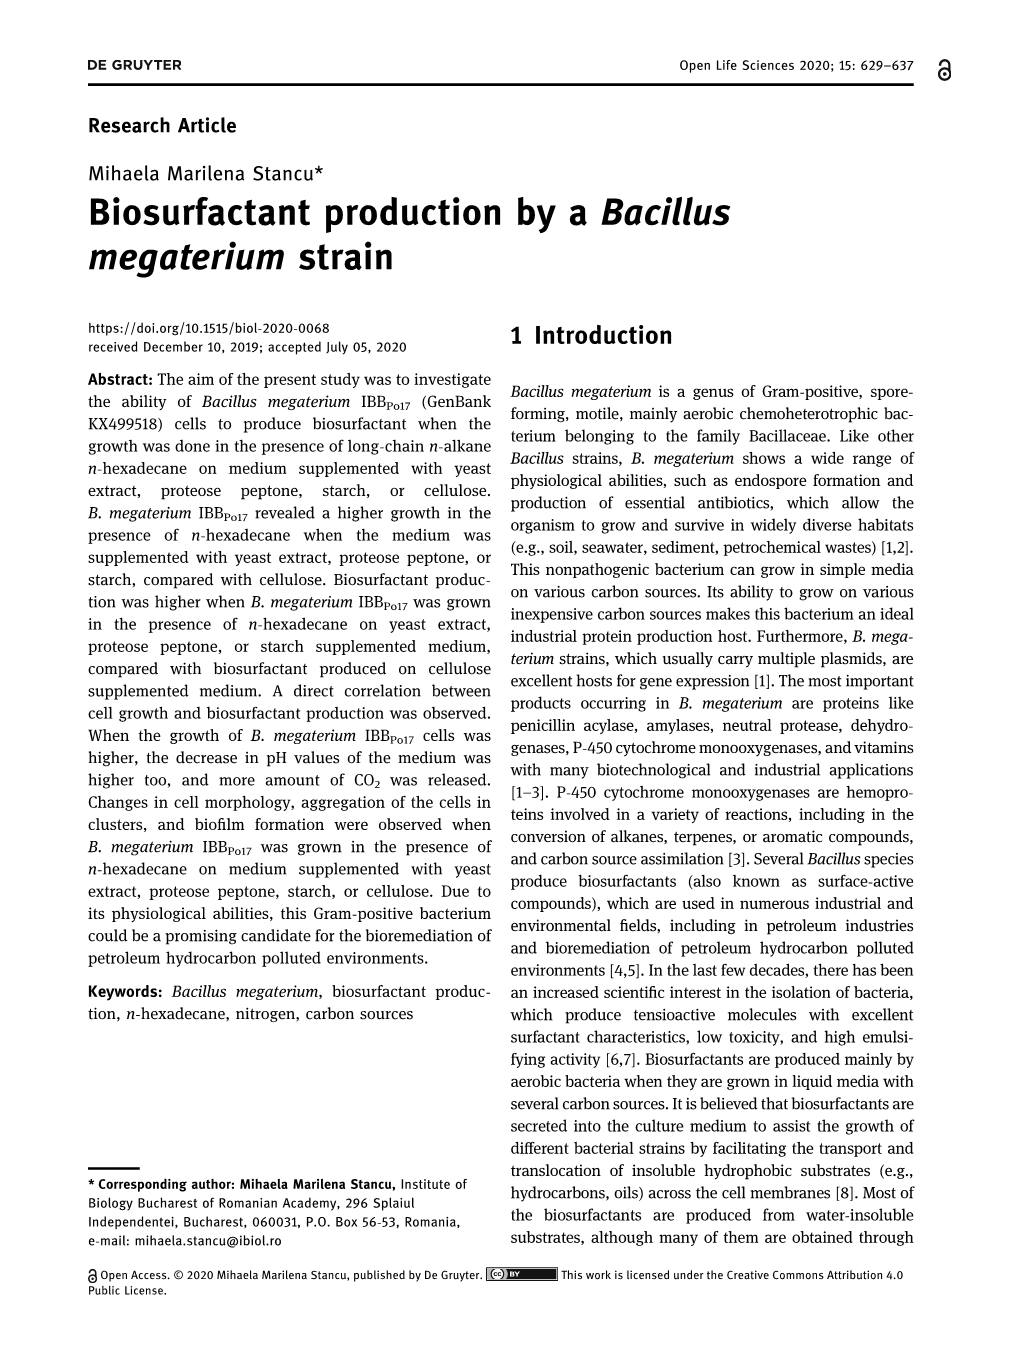 Biosurfactant Production by a Bacillus Megaterium Strain